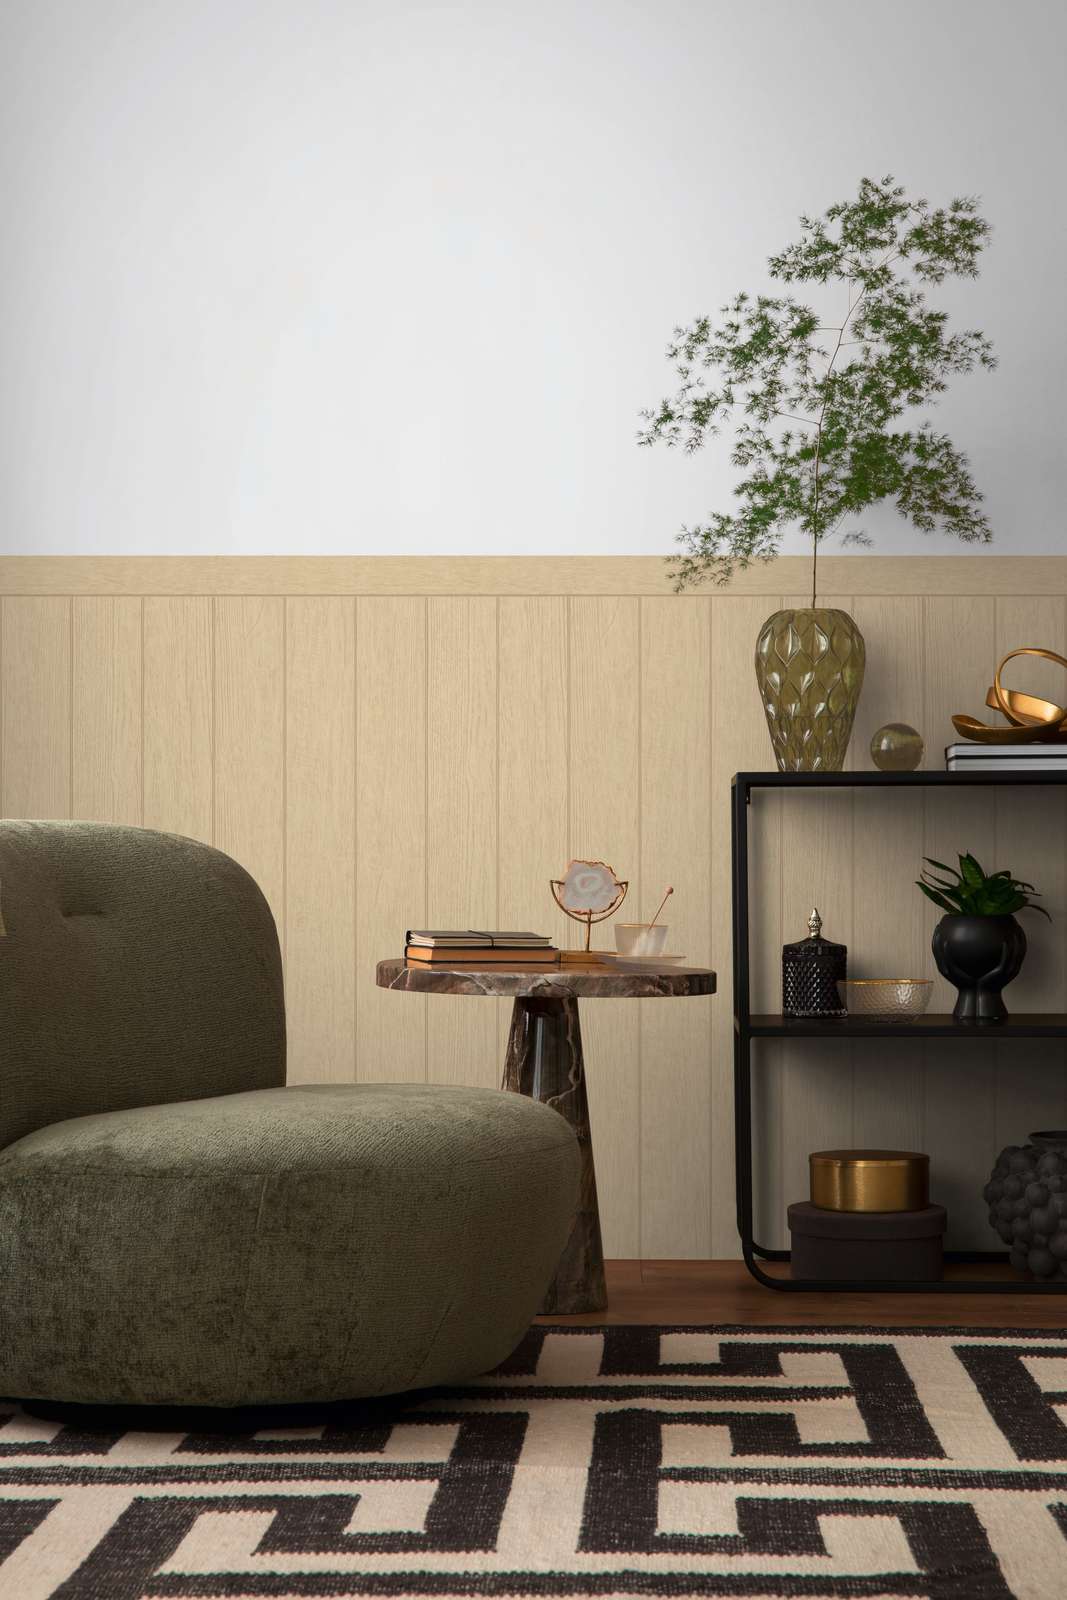             Vlies wandpaneel in houten balkenlook - beige, bruin
        